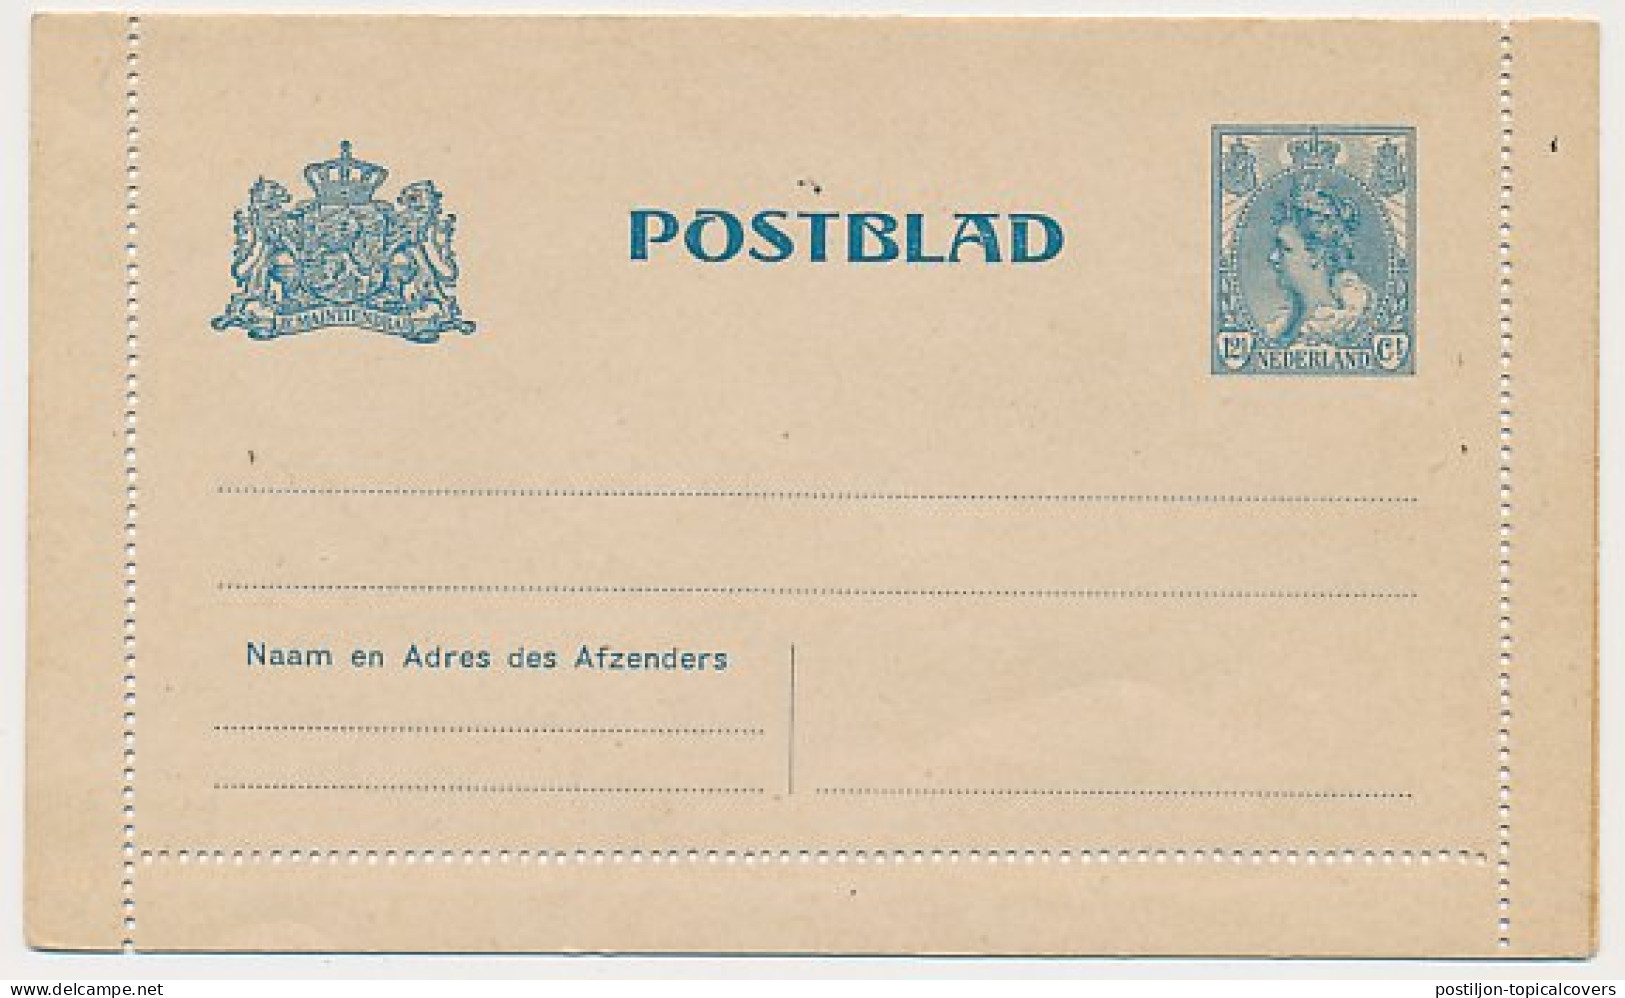 Postblad G. 15 - Postal Stationery